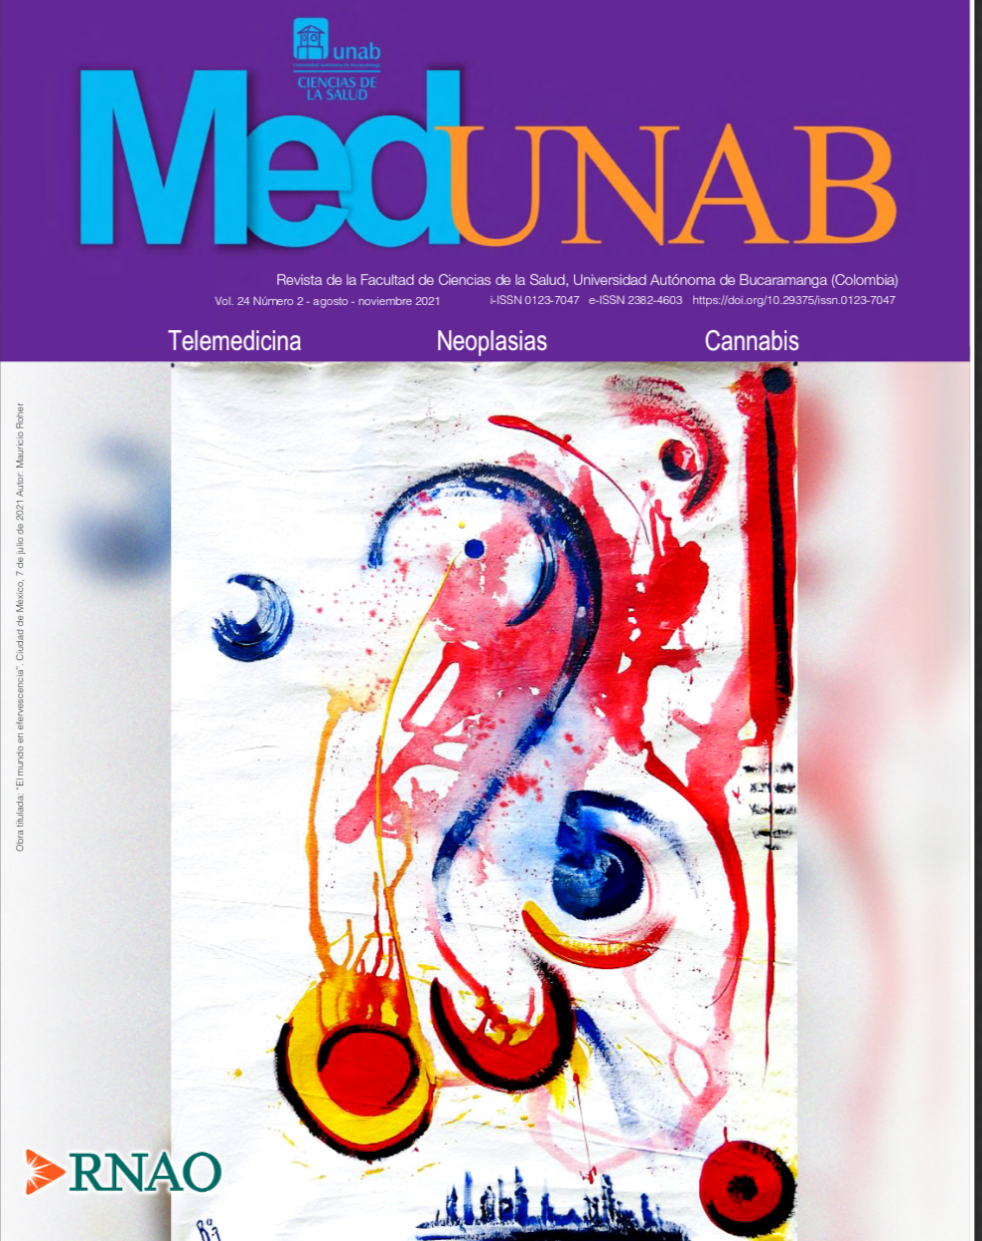 MedUNAB logra su indexación en Scopus, una de las bases de datos científicas de mayor prestigio internacional